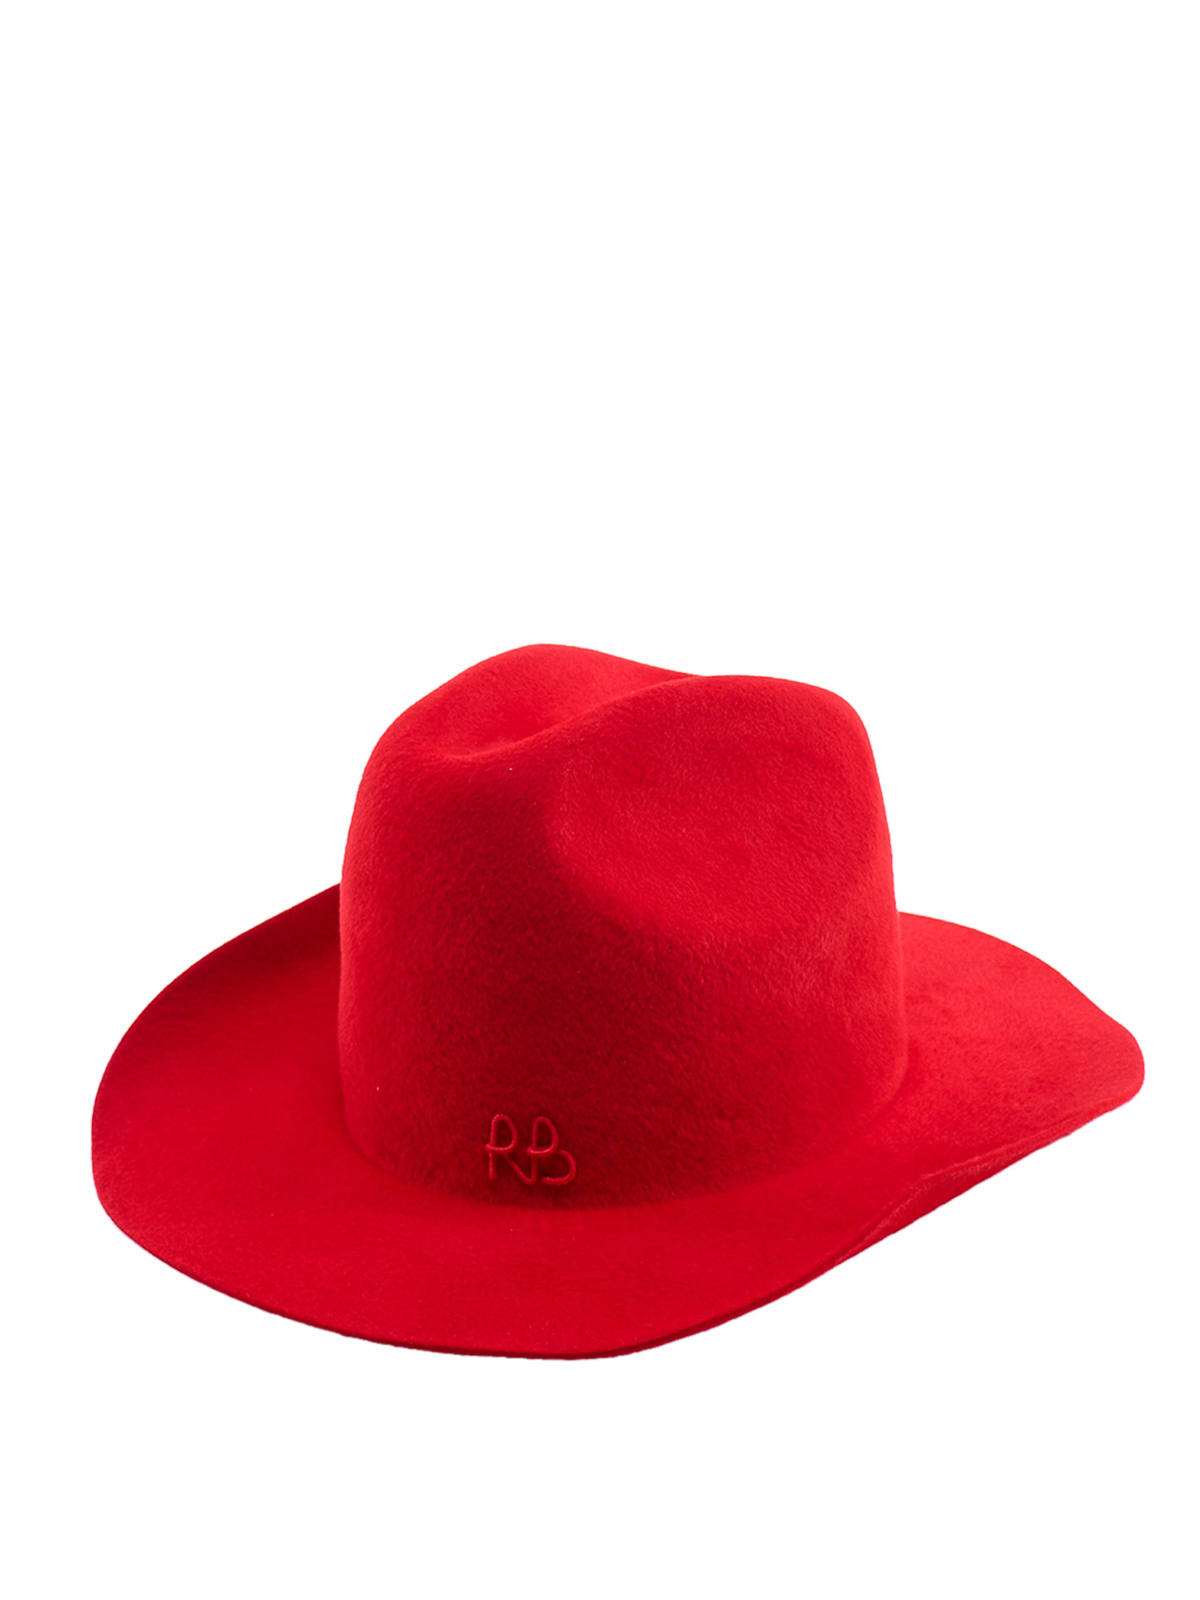 Shop Ruslan Baginskiy Sombrero - Rojo In Red